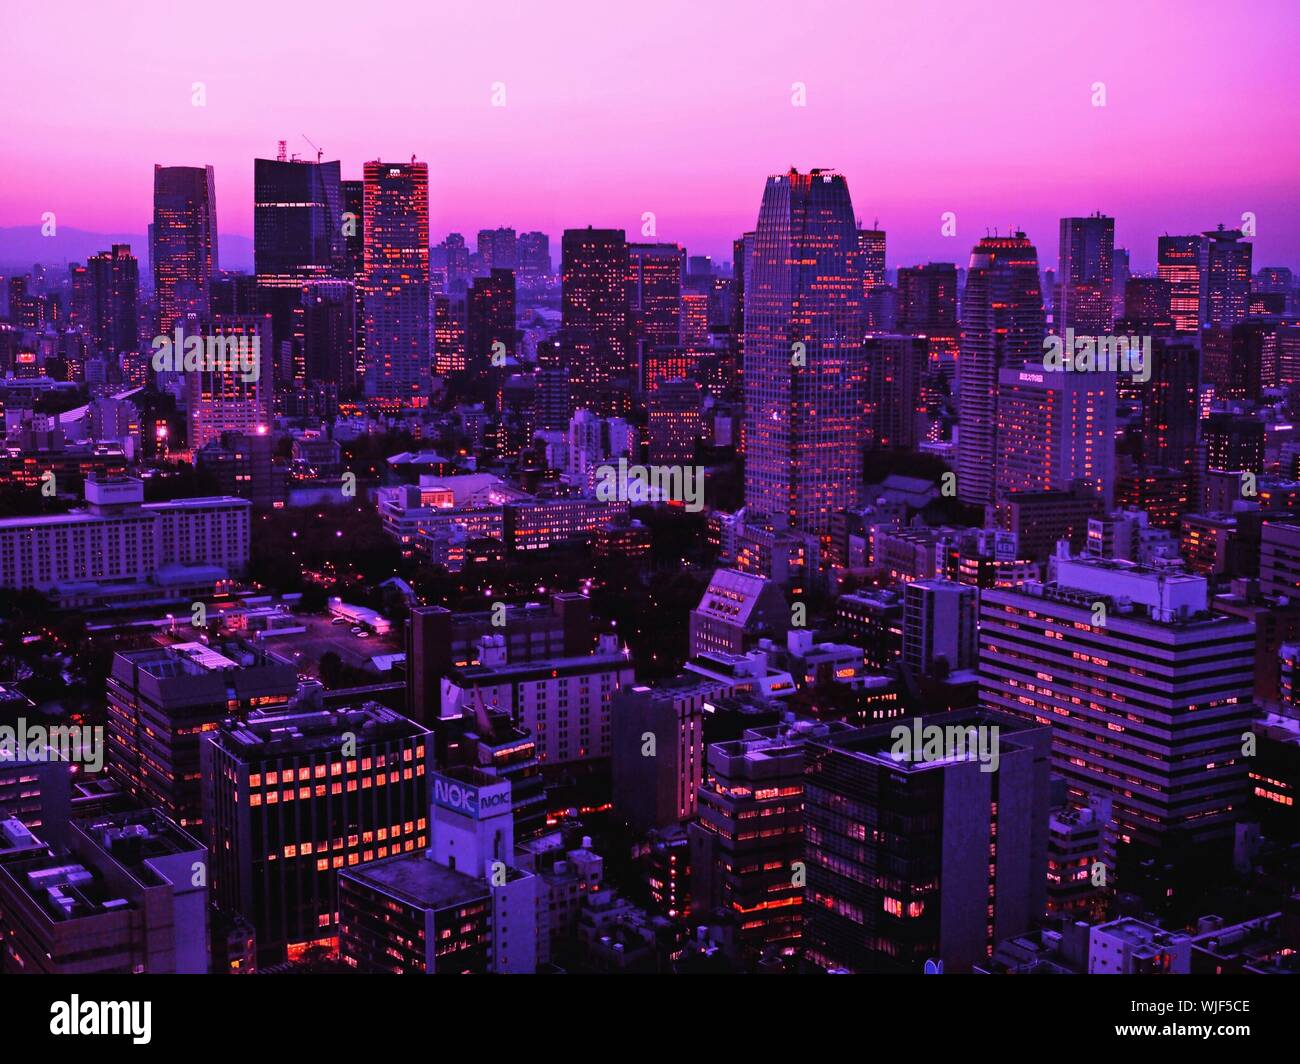 Las iluminaciones de los edificios contra el cielo púrpura en la ciudad al atardecer Foto de stock